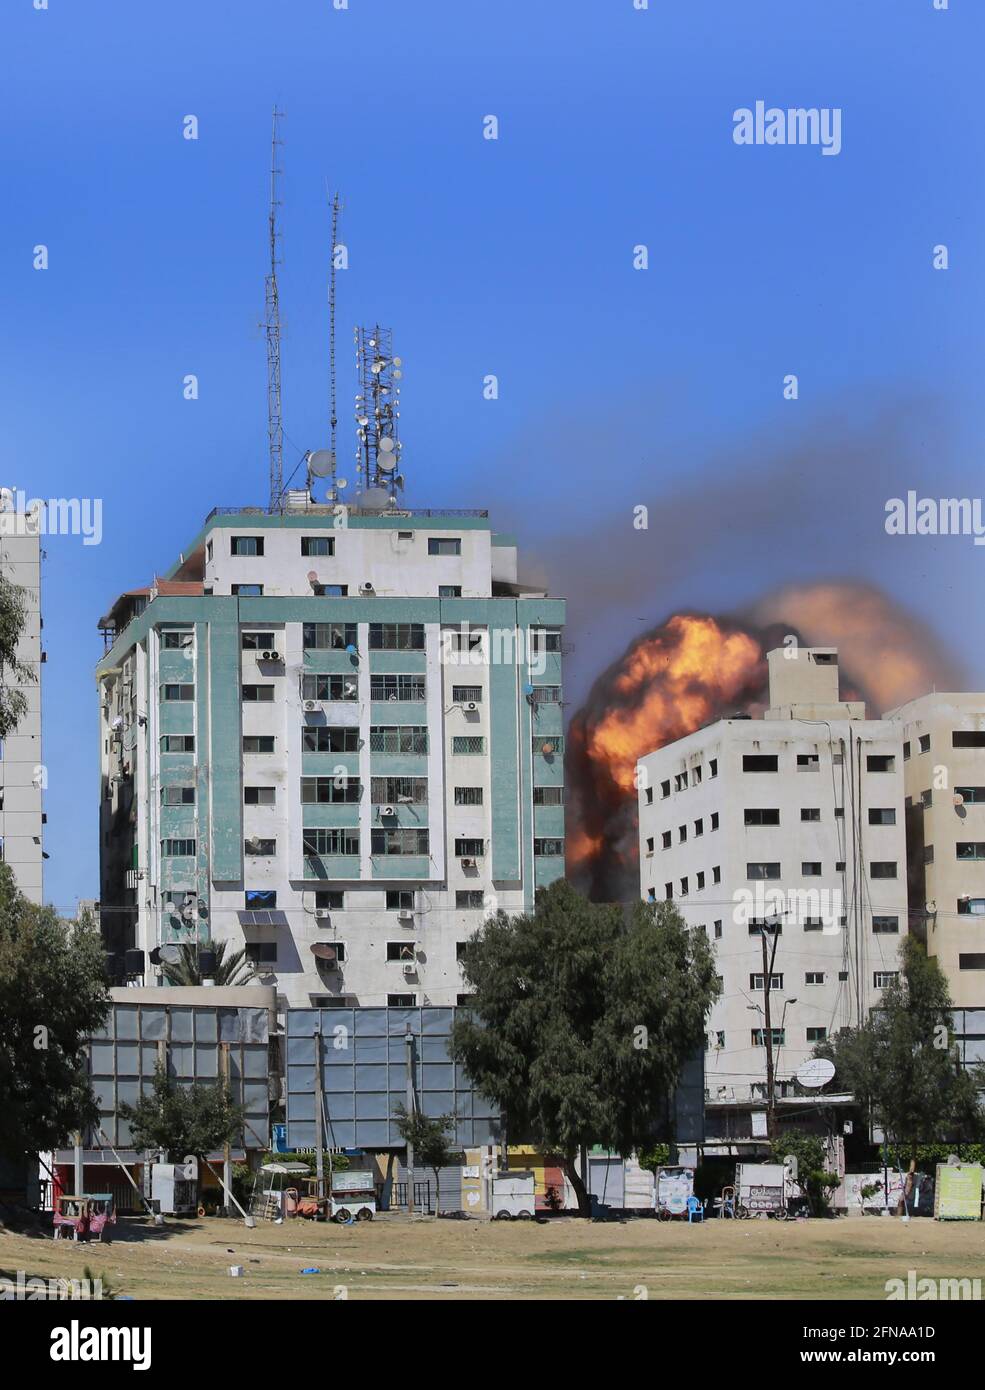 Gaza, Gaza. Mai 2021. Nach einem israelischen Luftangriff am Samstag, dem 15. Mai 2021 in Gaza-Stadt, bricht aus einem Gebäude, in dem verschiedene internationale Medien, darunter die Associated Press, untergebracht sind, ein Feuerball aus. Der Angriff kam etwa eine Stunde, nachdem das israelische Militär den Menschen befohlen hatte, das Gebäude zu evakuieren, in dem sich auch Al-Jazeera und eine Reihe von Büros und Wohnungen befanden. Es gab keine unmittelbare Erklärung dafür, warum das Gebäude ins Visier genommen wurde. Foto von Ahmad Zaqut/UPI Credit: UPI/Alamy Live News Stockfoto